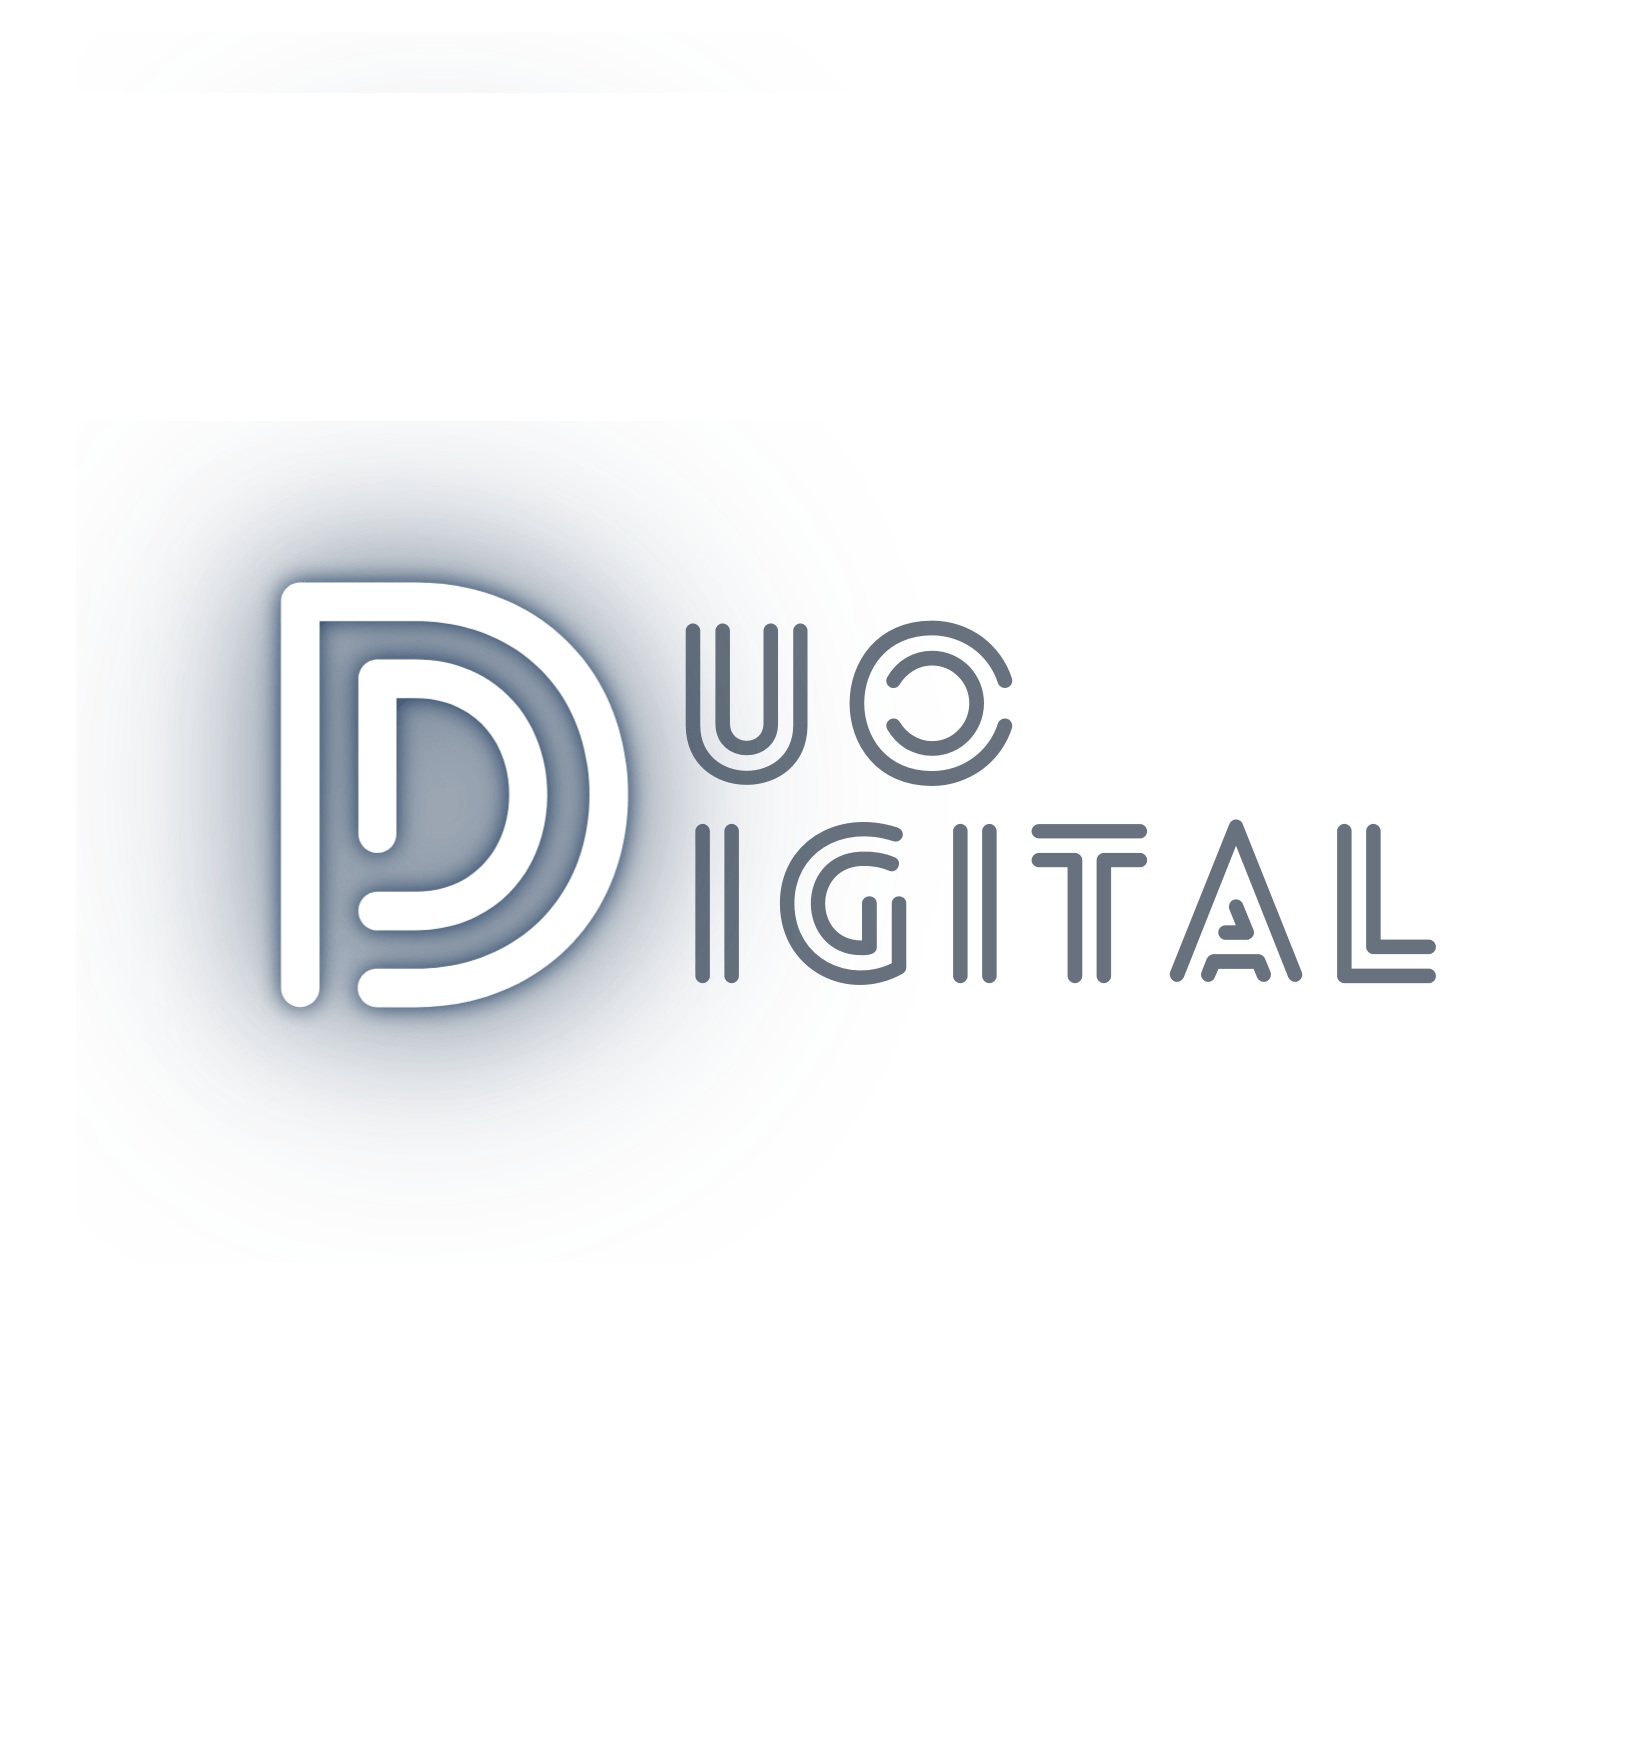 DUO Digital